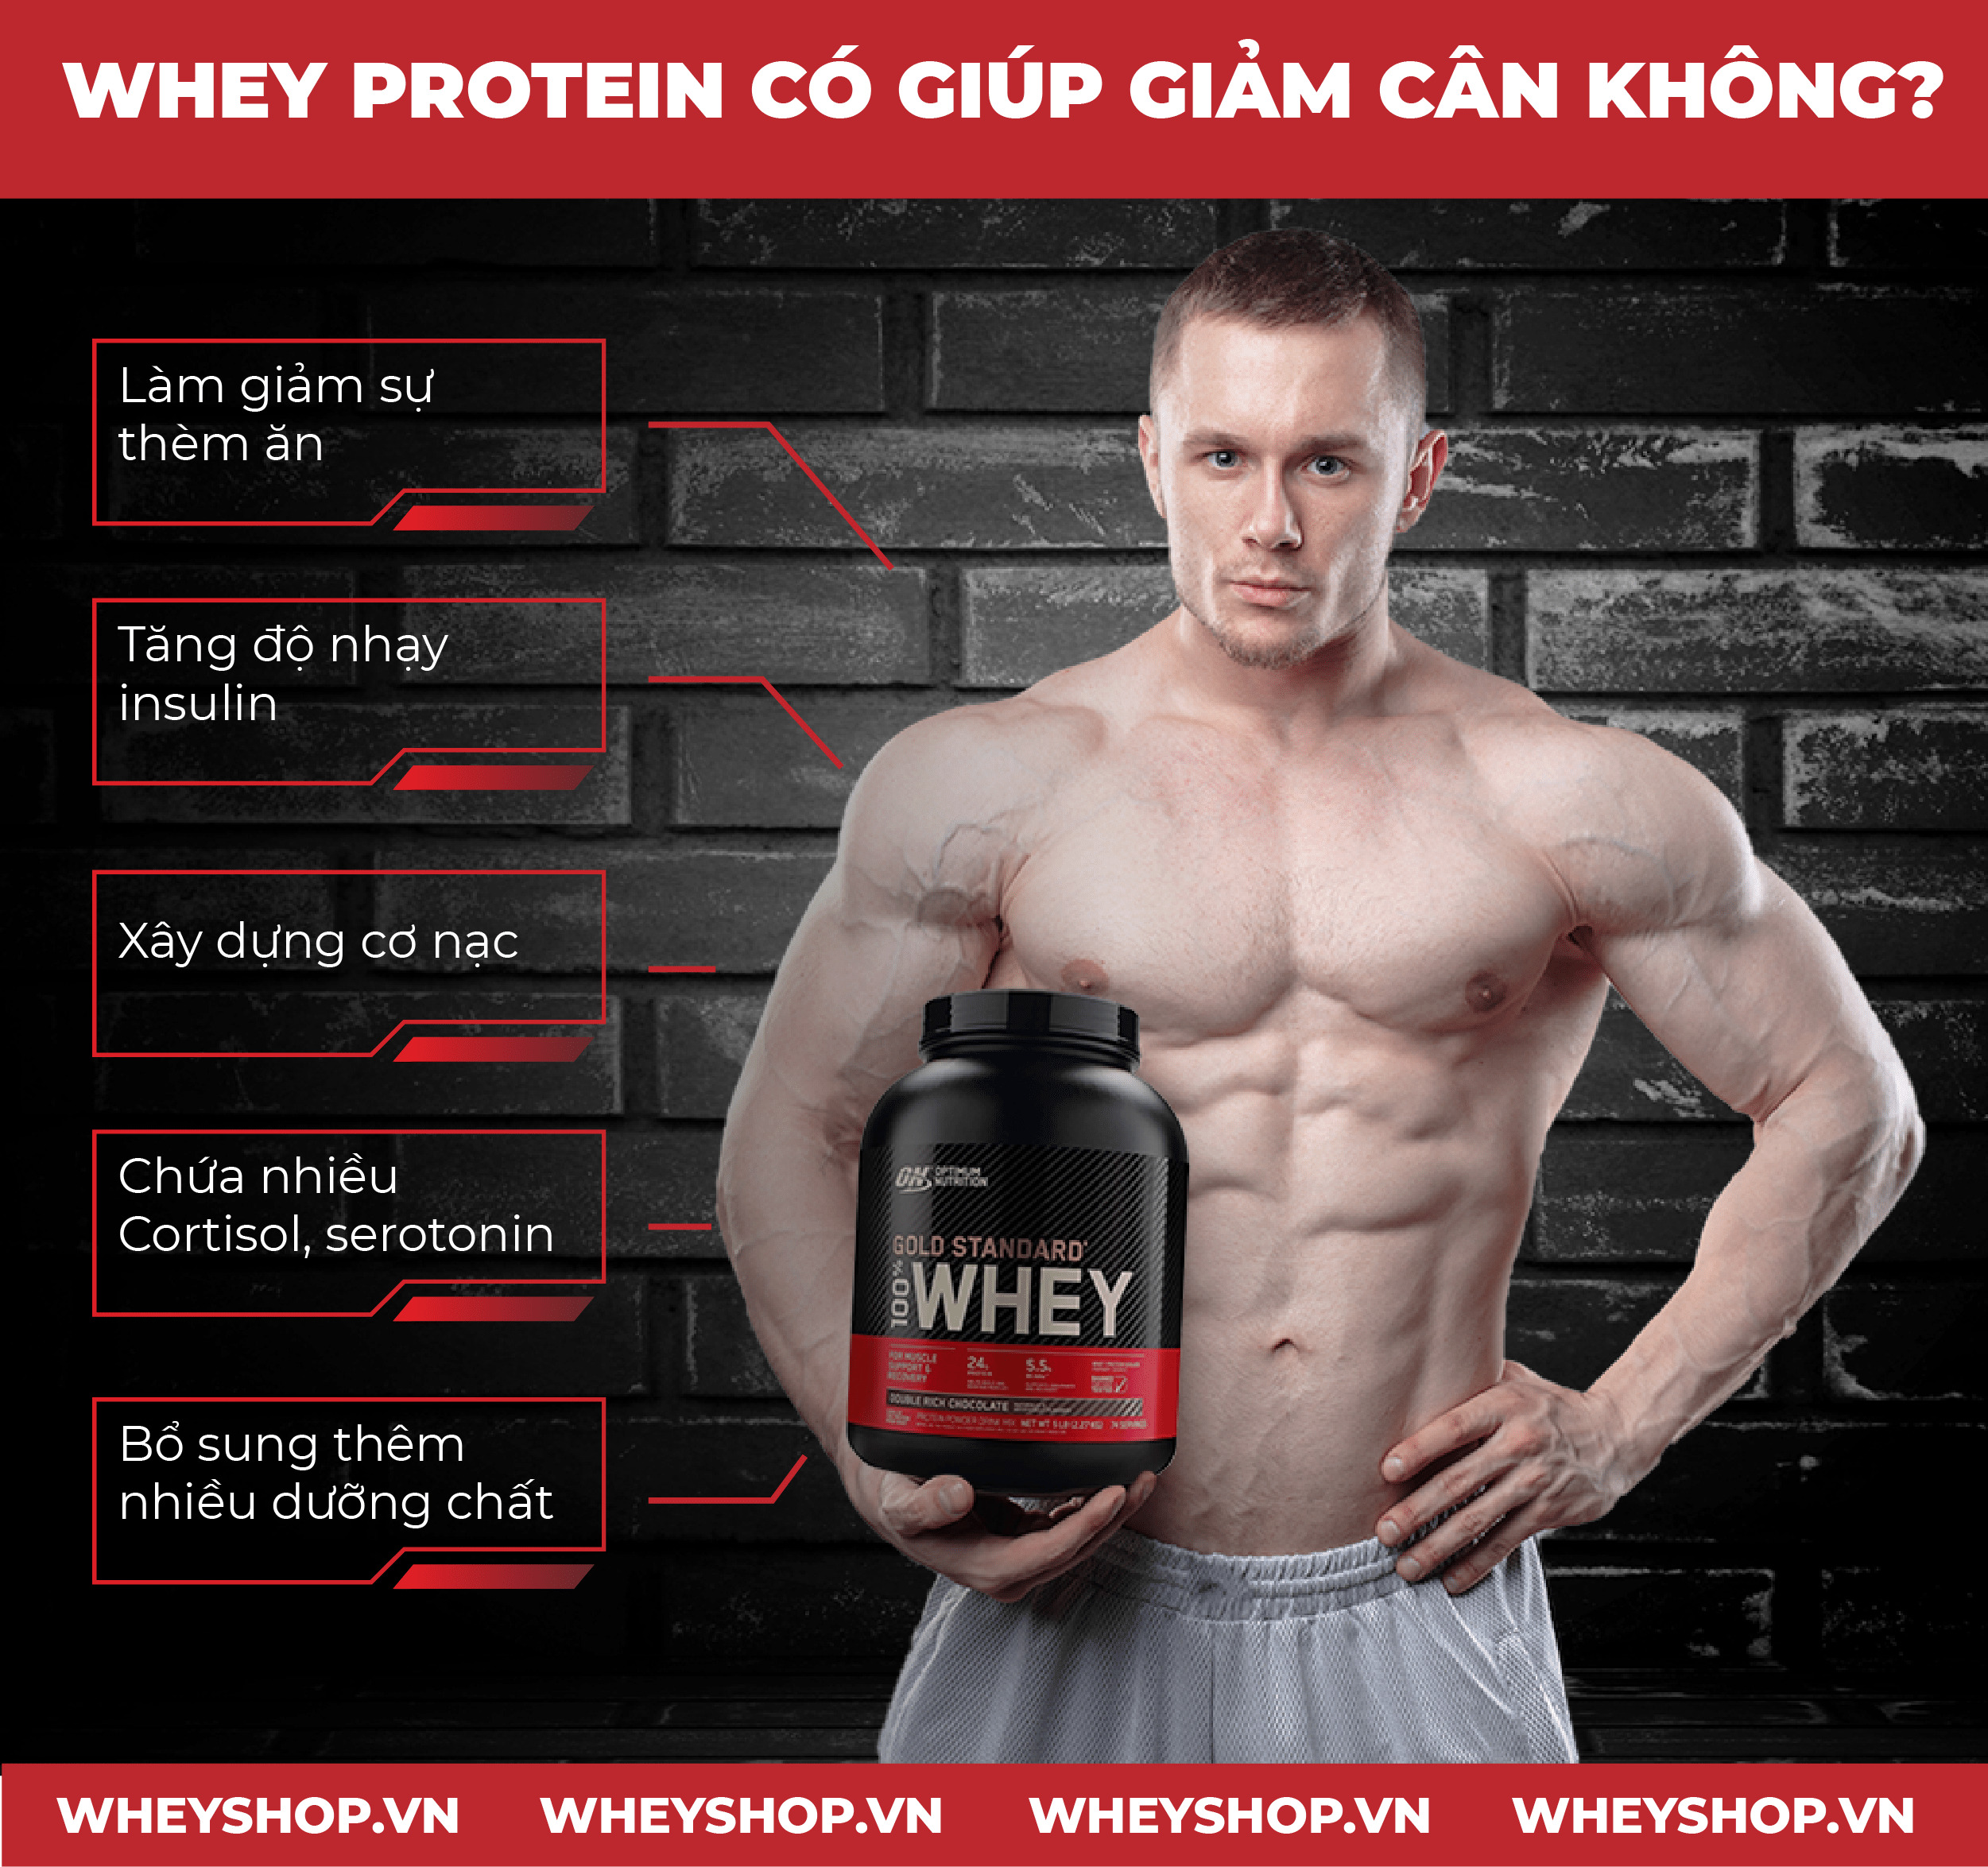 Nếu bạn đang băn khoăn uống Whey Protein có giúp giảm cân không thì hãy cùng WheyShop tham khảo chi tiết bài viết để tìm câu trả lời ngay nhé...